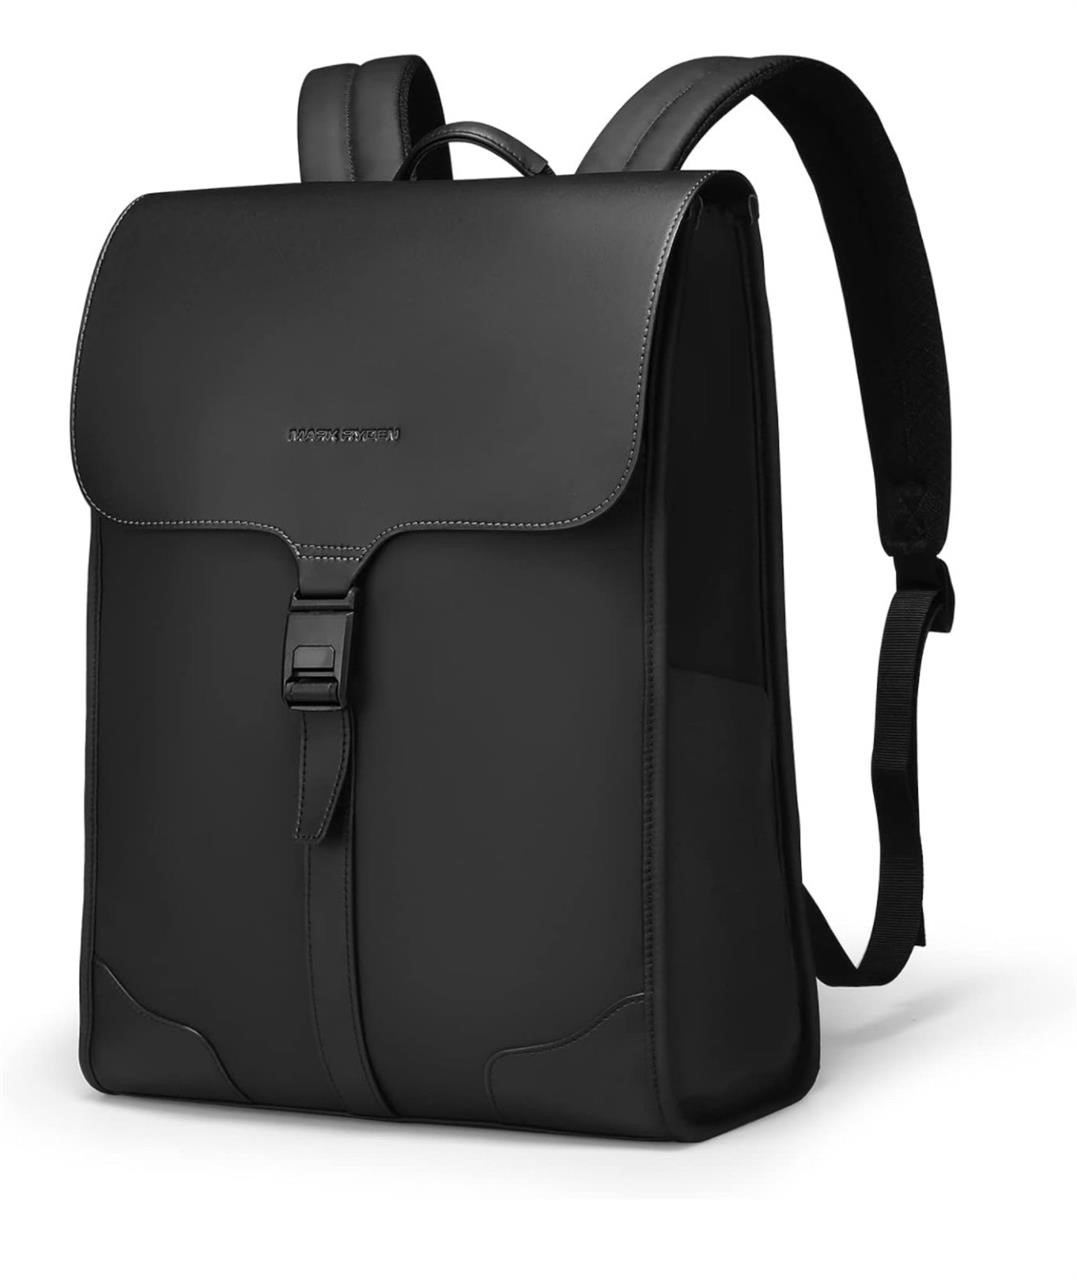 $55 Slim Laptop Backpack for Men, 15.6 Inch